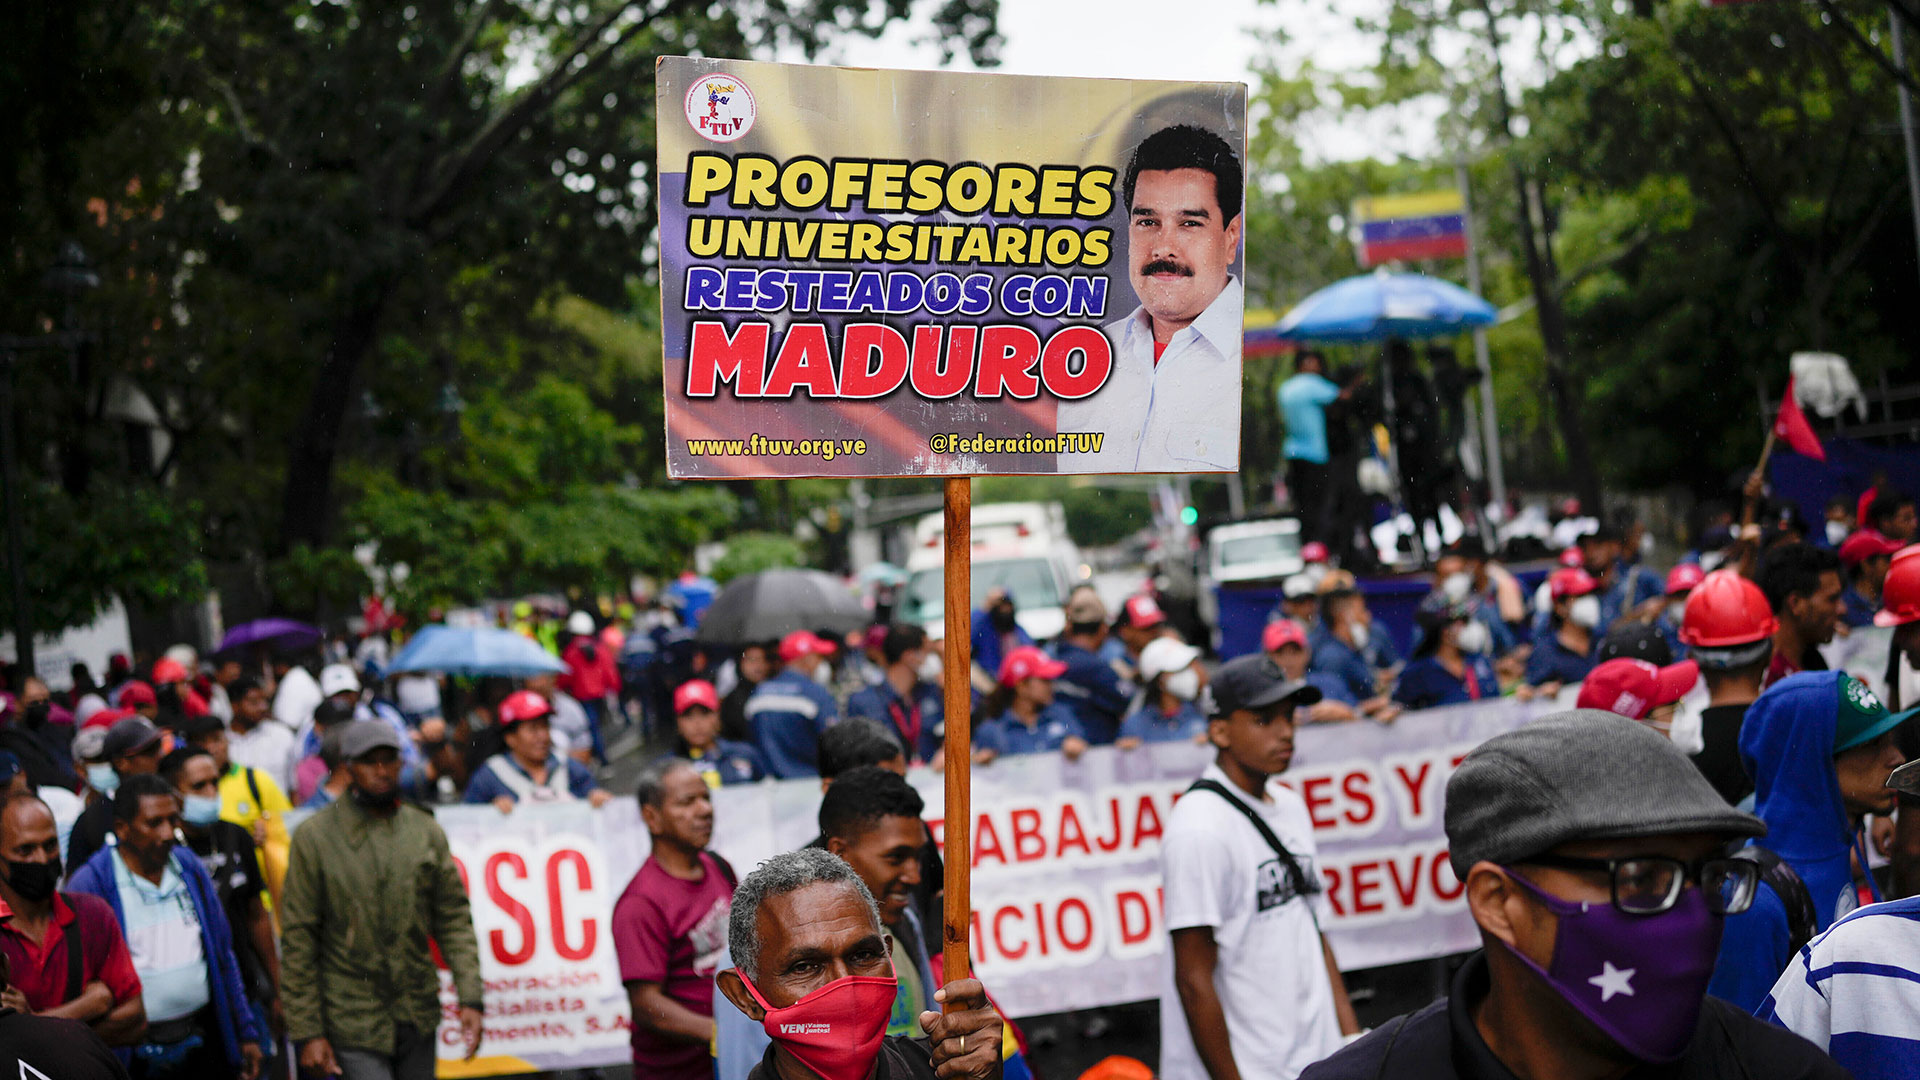 La Plataforma Unitaria de Venezuela anunció que “respalda y acompaña” las protestas gremiales contra la dictadura de Maduro